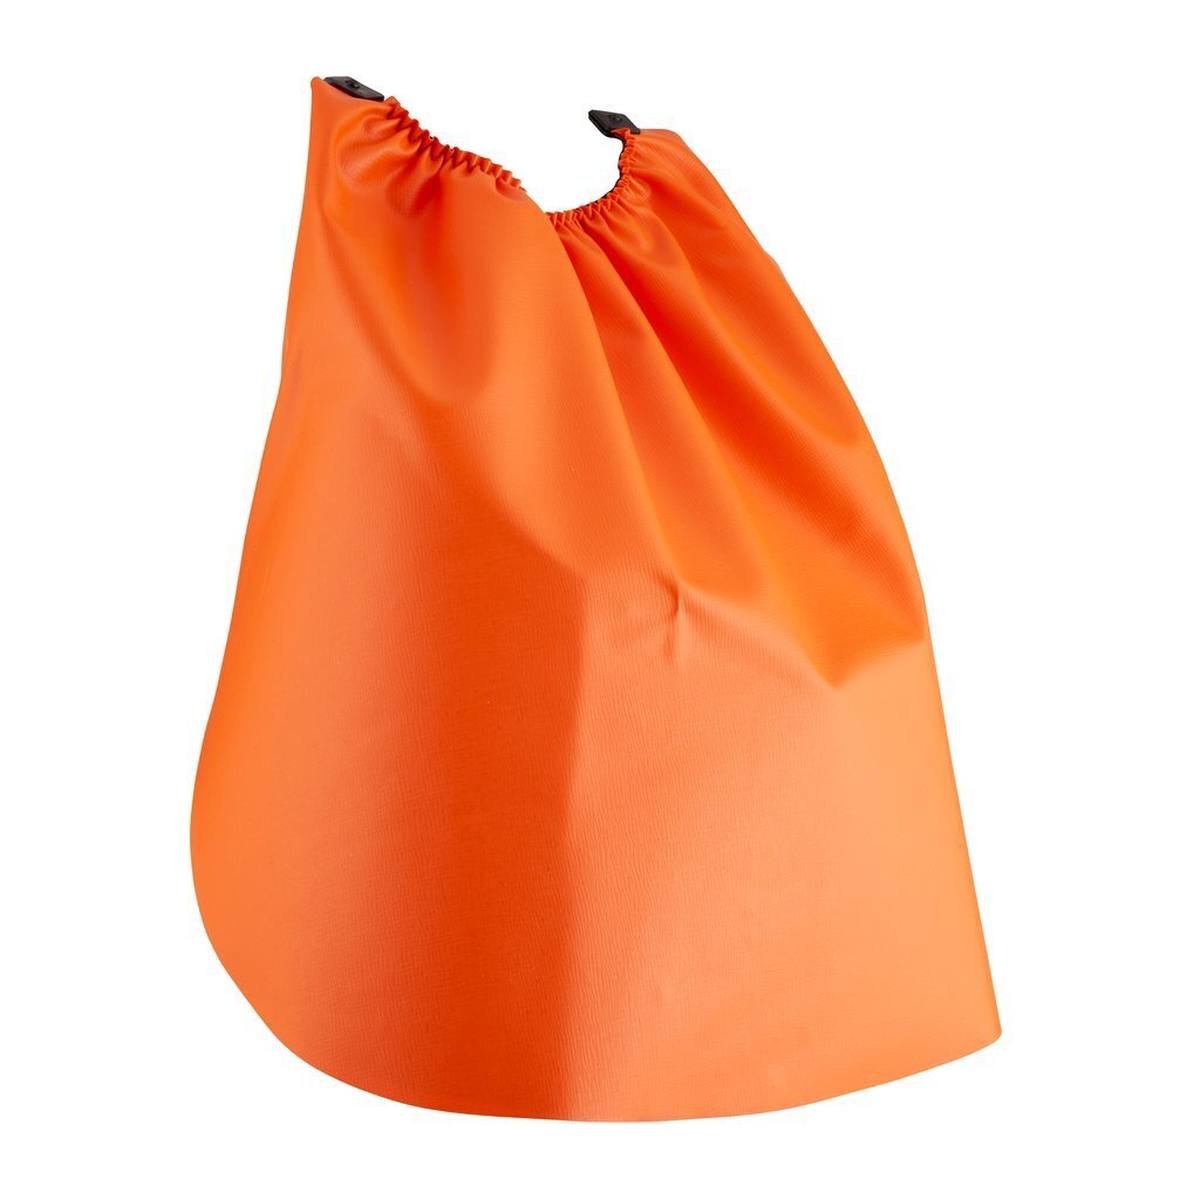 3M Protège-nuque GR1C en orange, à fixer à l'extérieur du casque antibruit